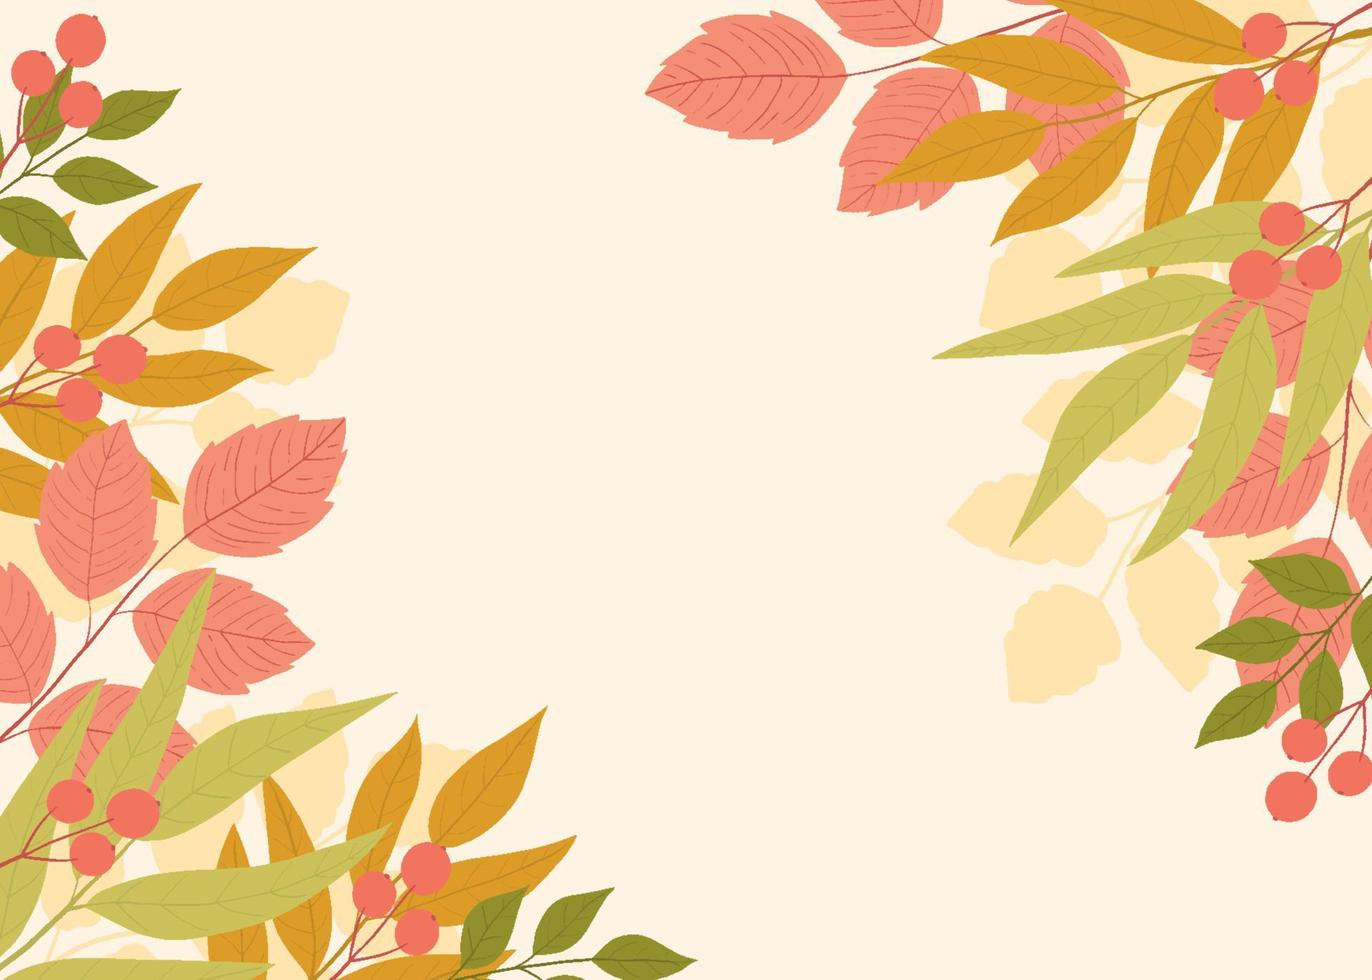 Herbstblumenhintergrund mit bunten Baumblättern vektor